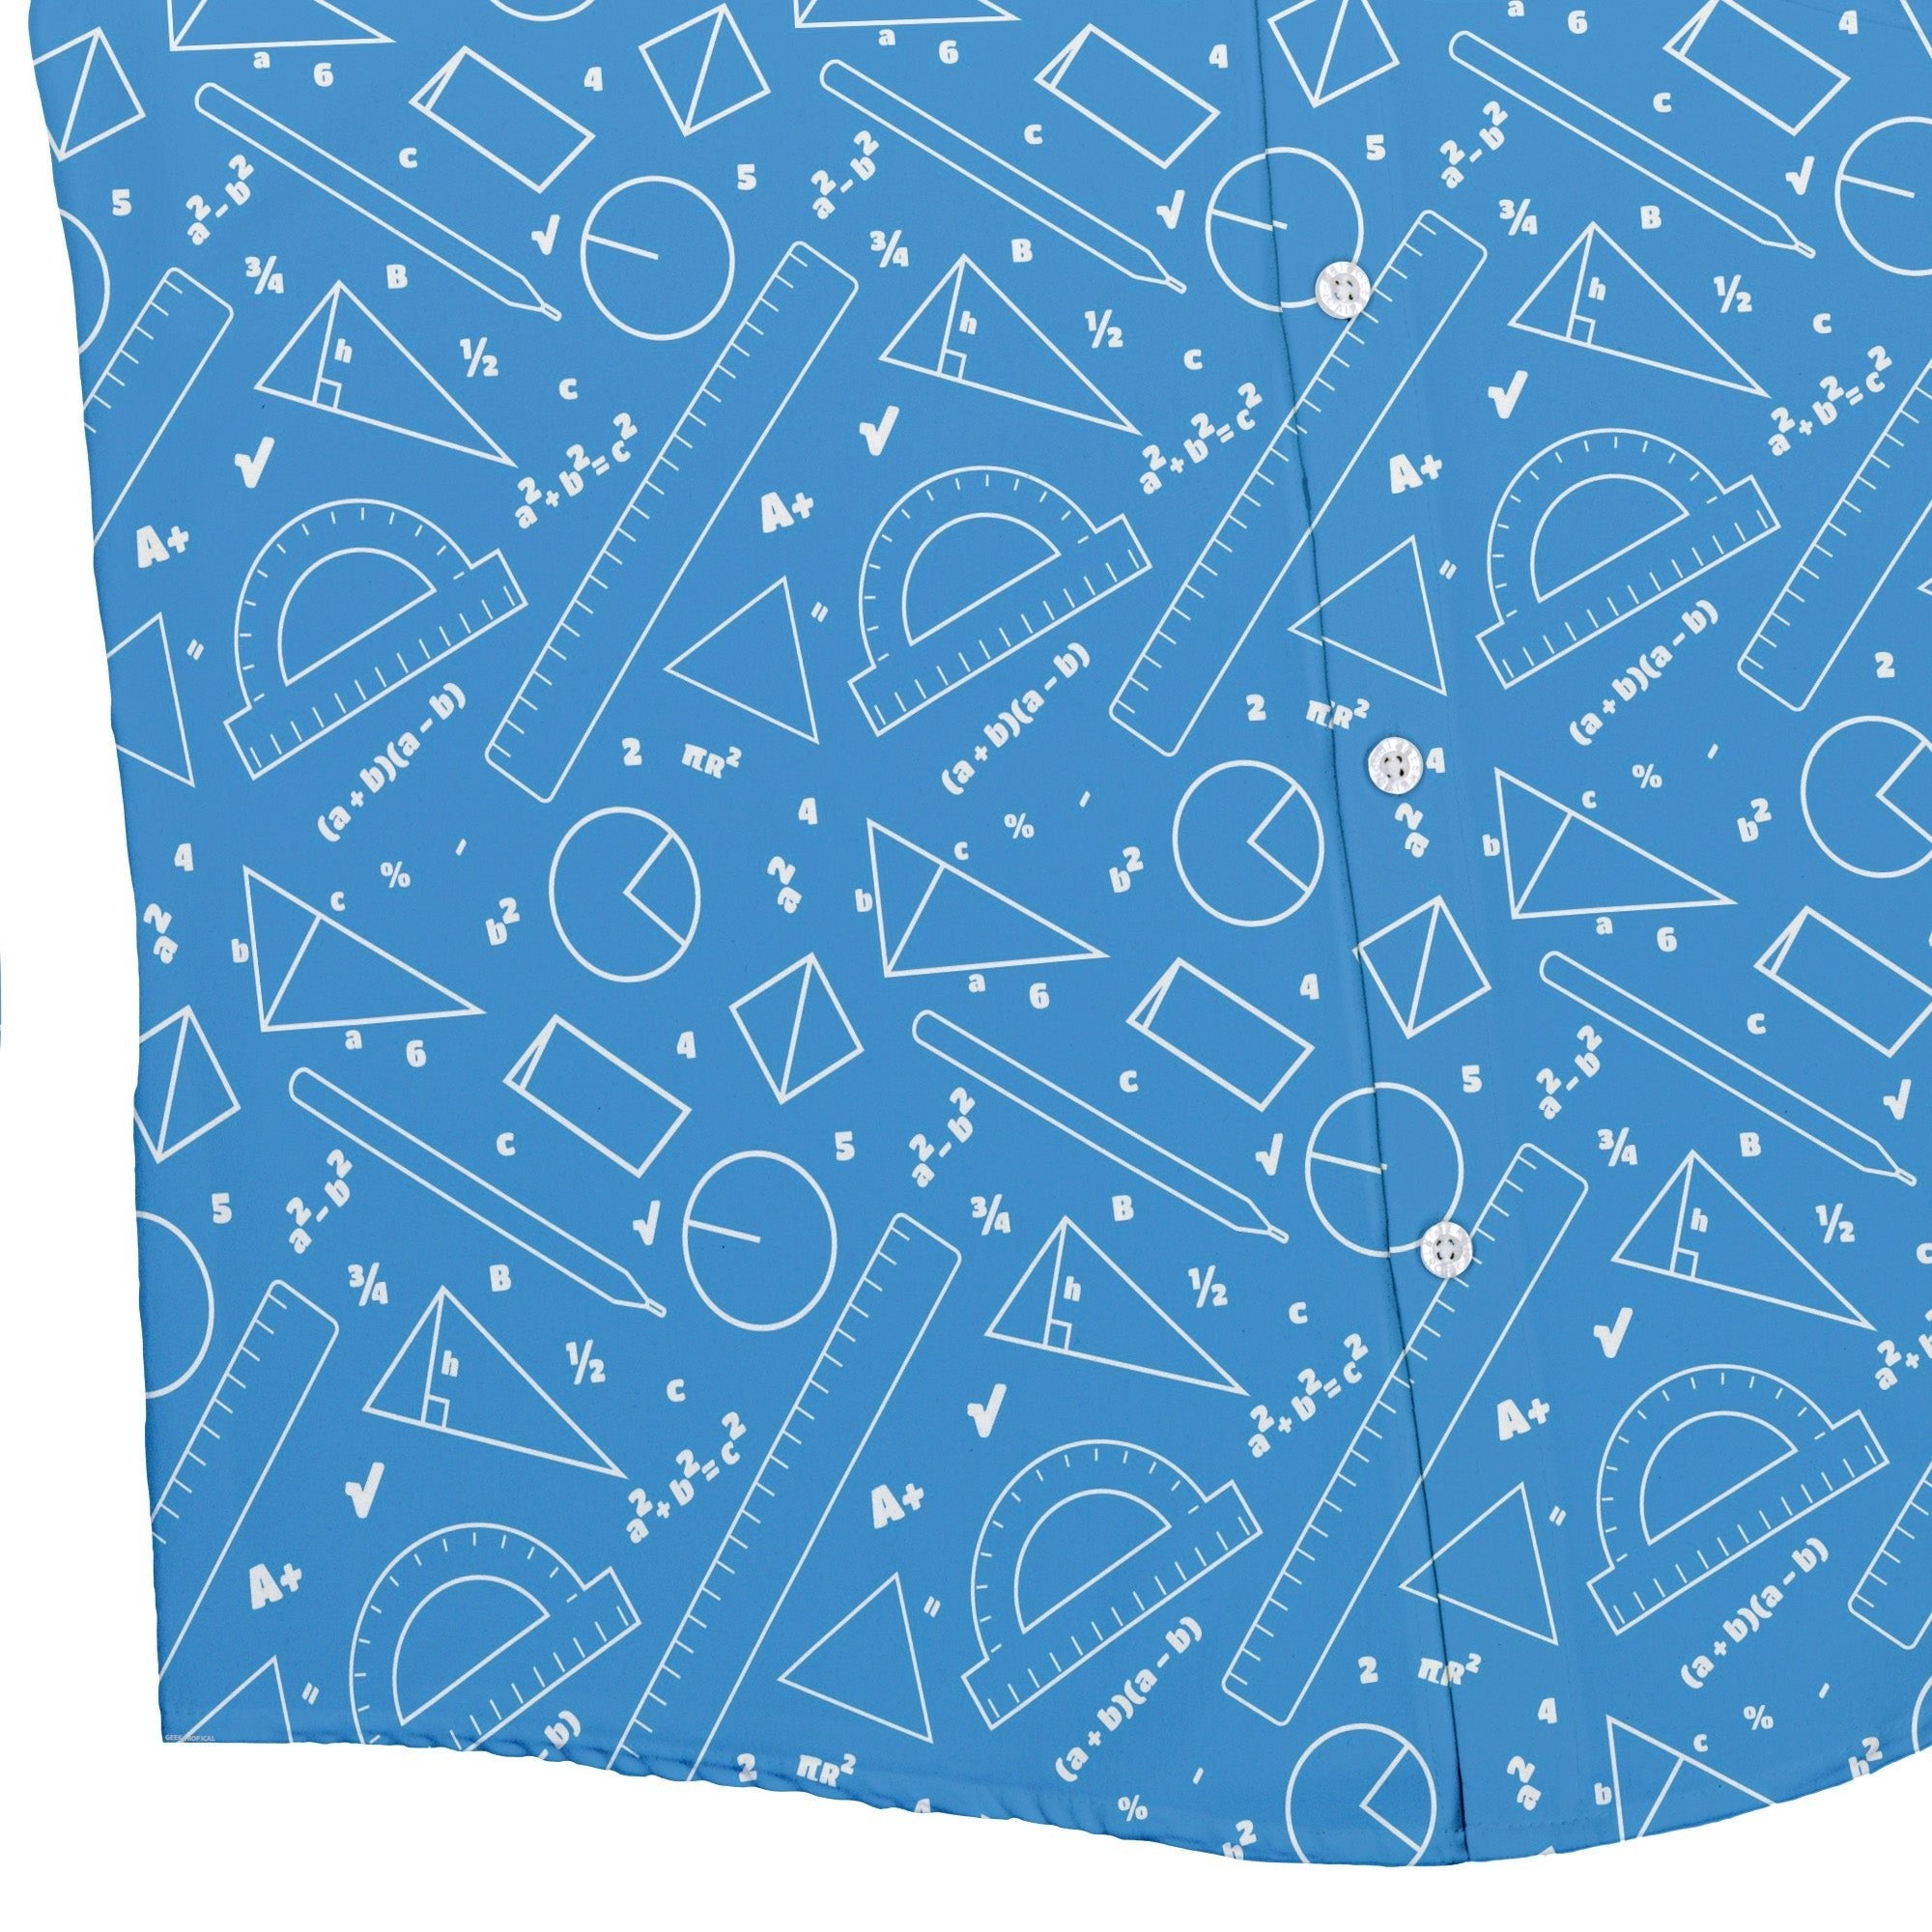 Geometry Blue Math Button Up Shirt - adult sizing - mathematics print -